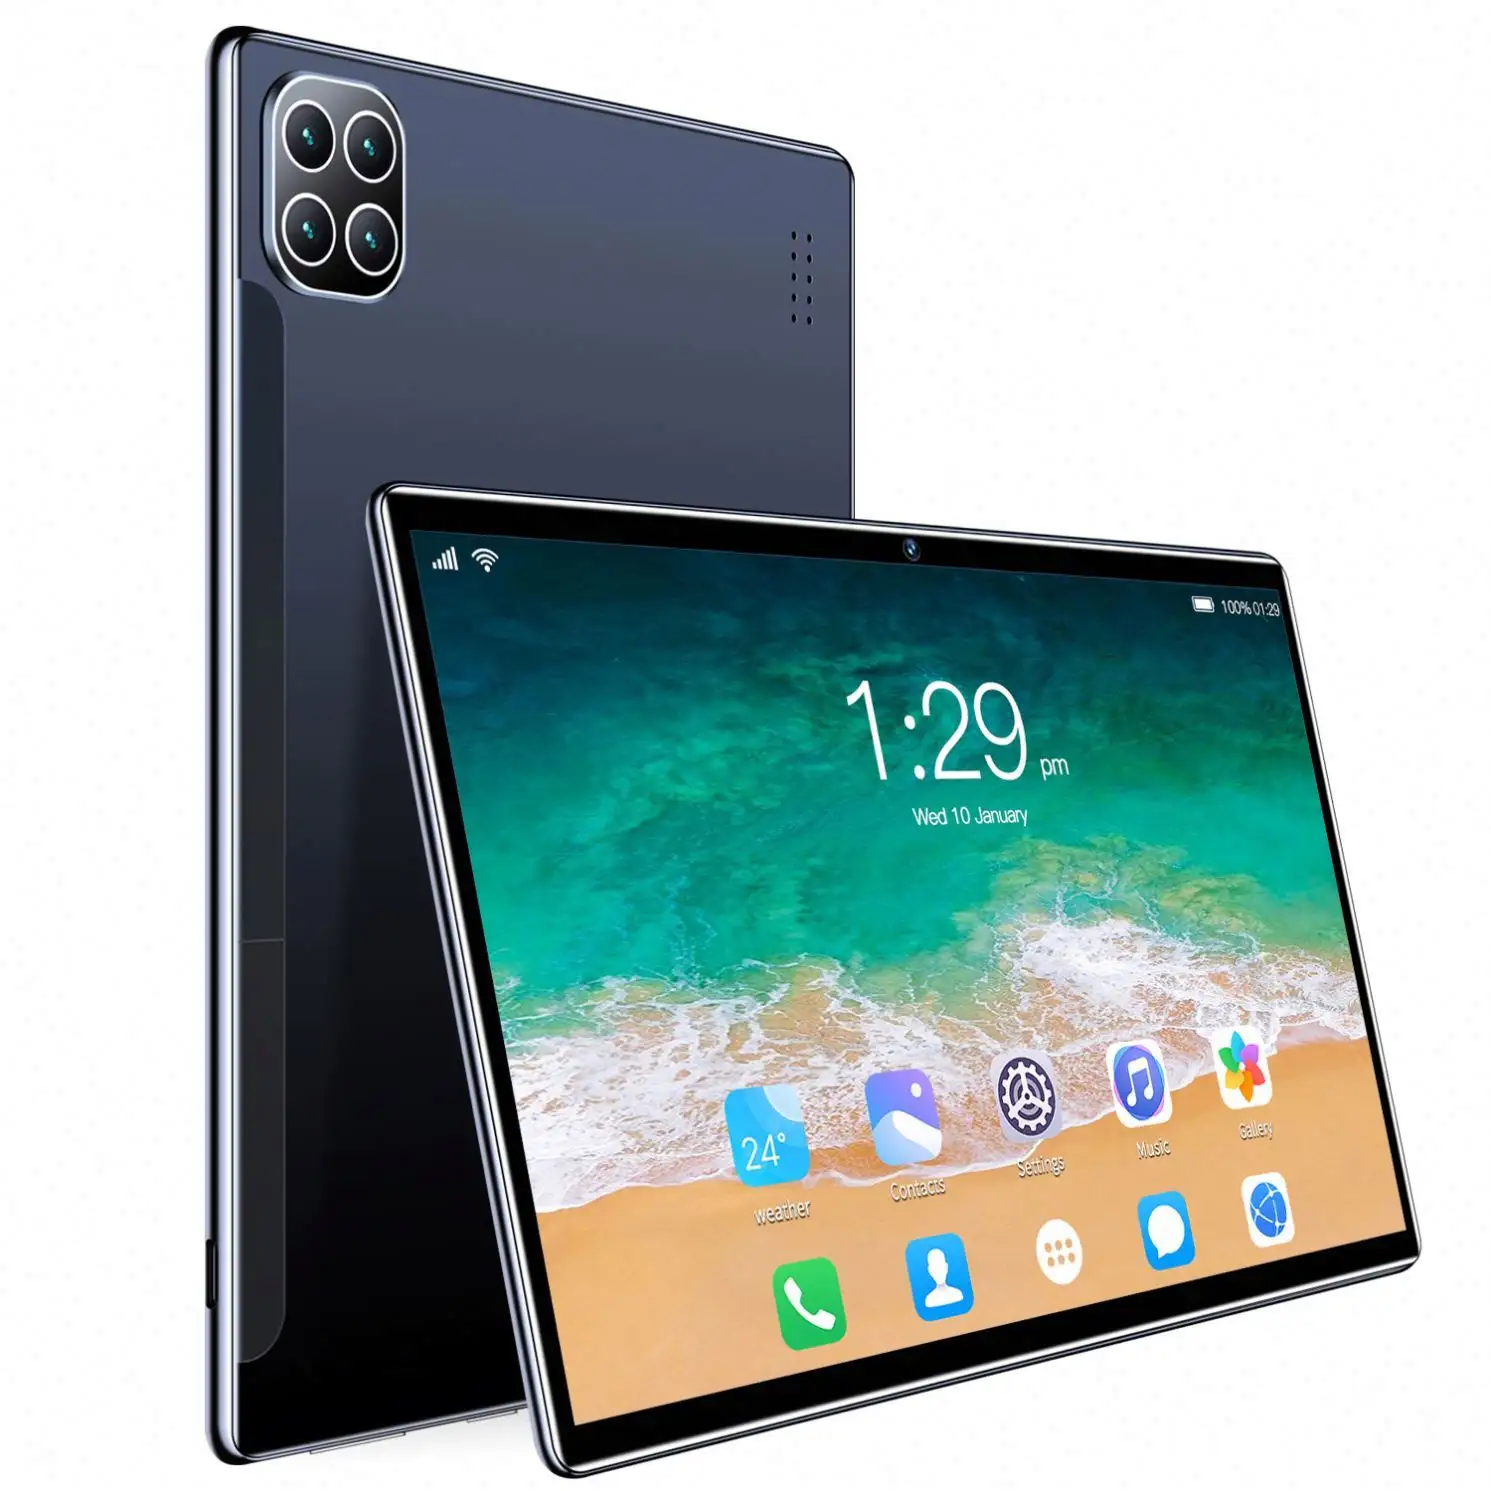 Nuovo arrivo ATOUCH 7 pollici Tablet Android Quad Core 5G telefono cellulare Dual Sim Tablet PC con custodia Anti-caduta